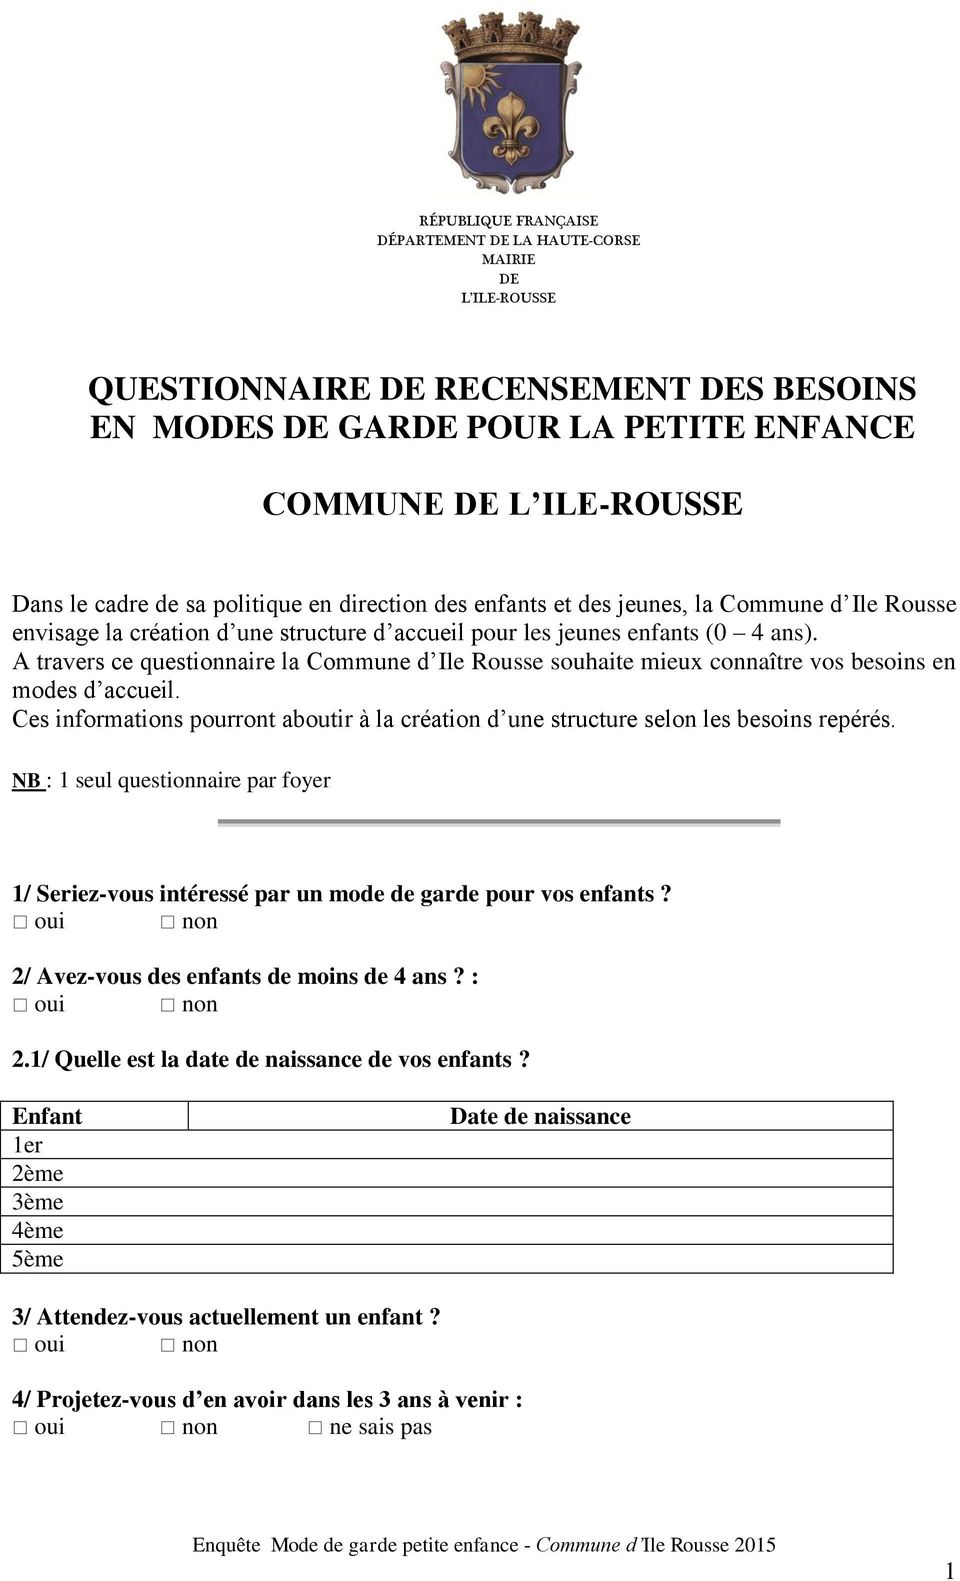 A travers ce questionnaire la Commune d Ile Rousse souhaite mieux connaître vos besoins en modes d accueil. Ces informations pourront aboutir à la création d une structure selon les besoins repérés.